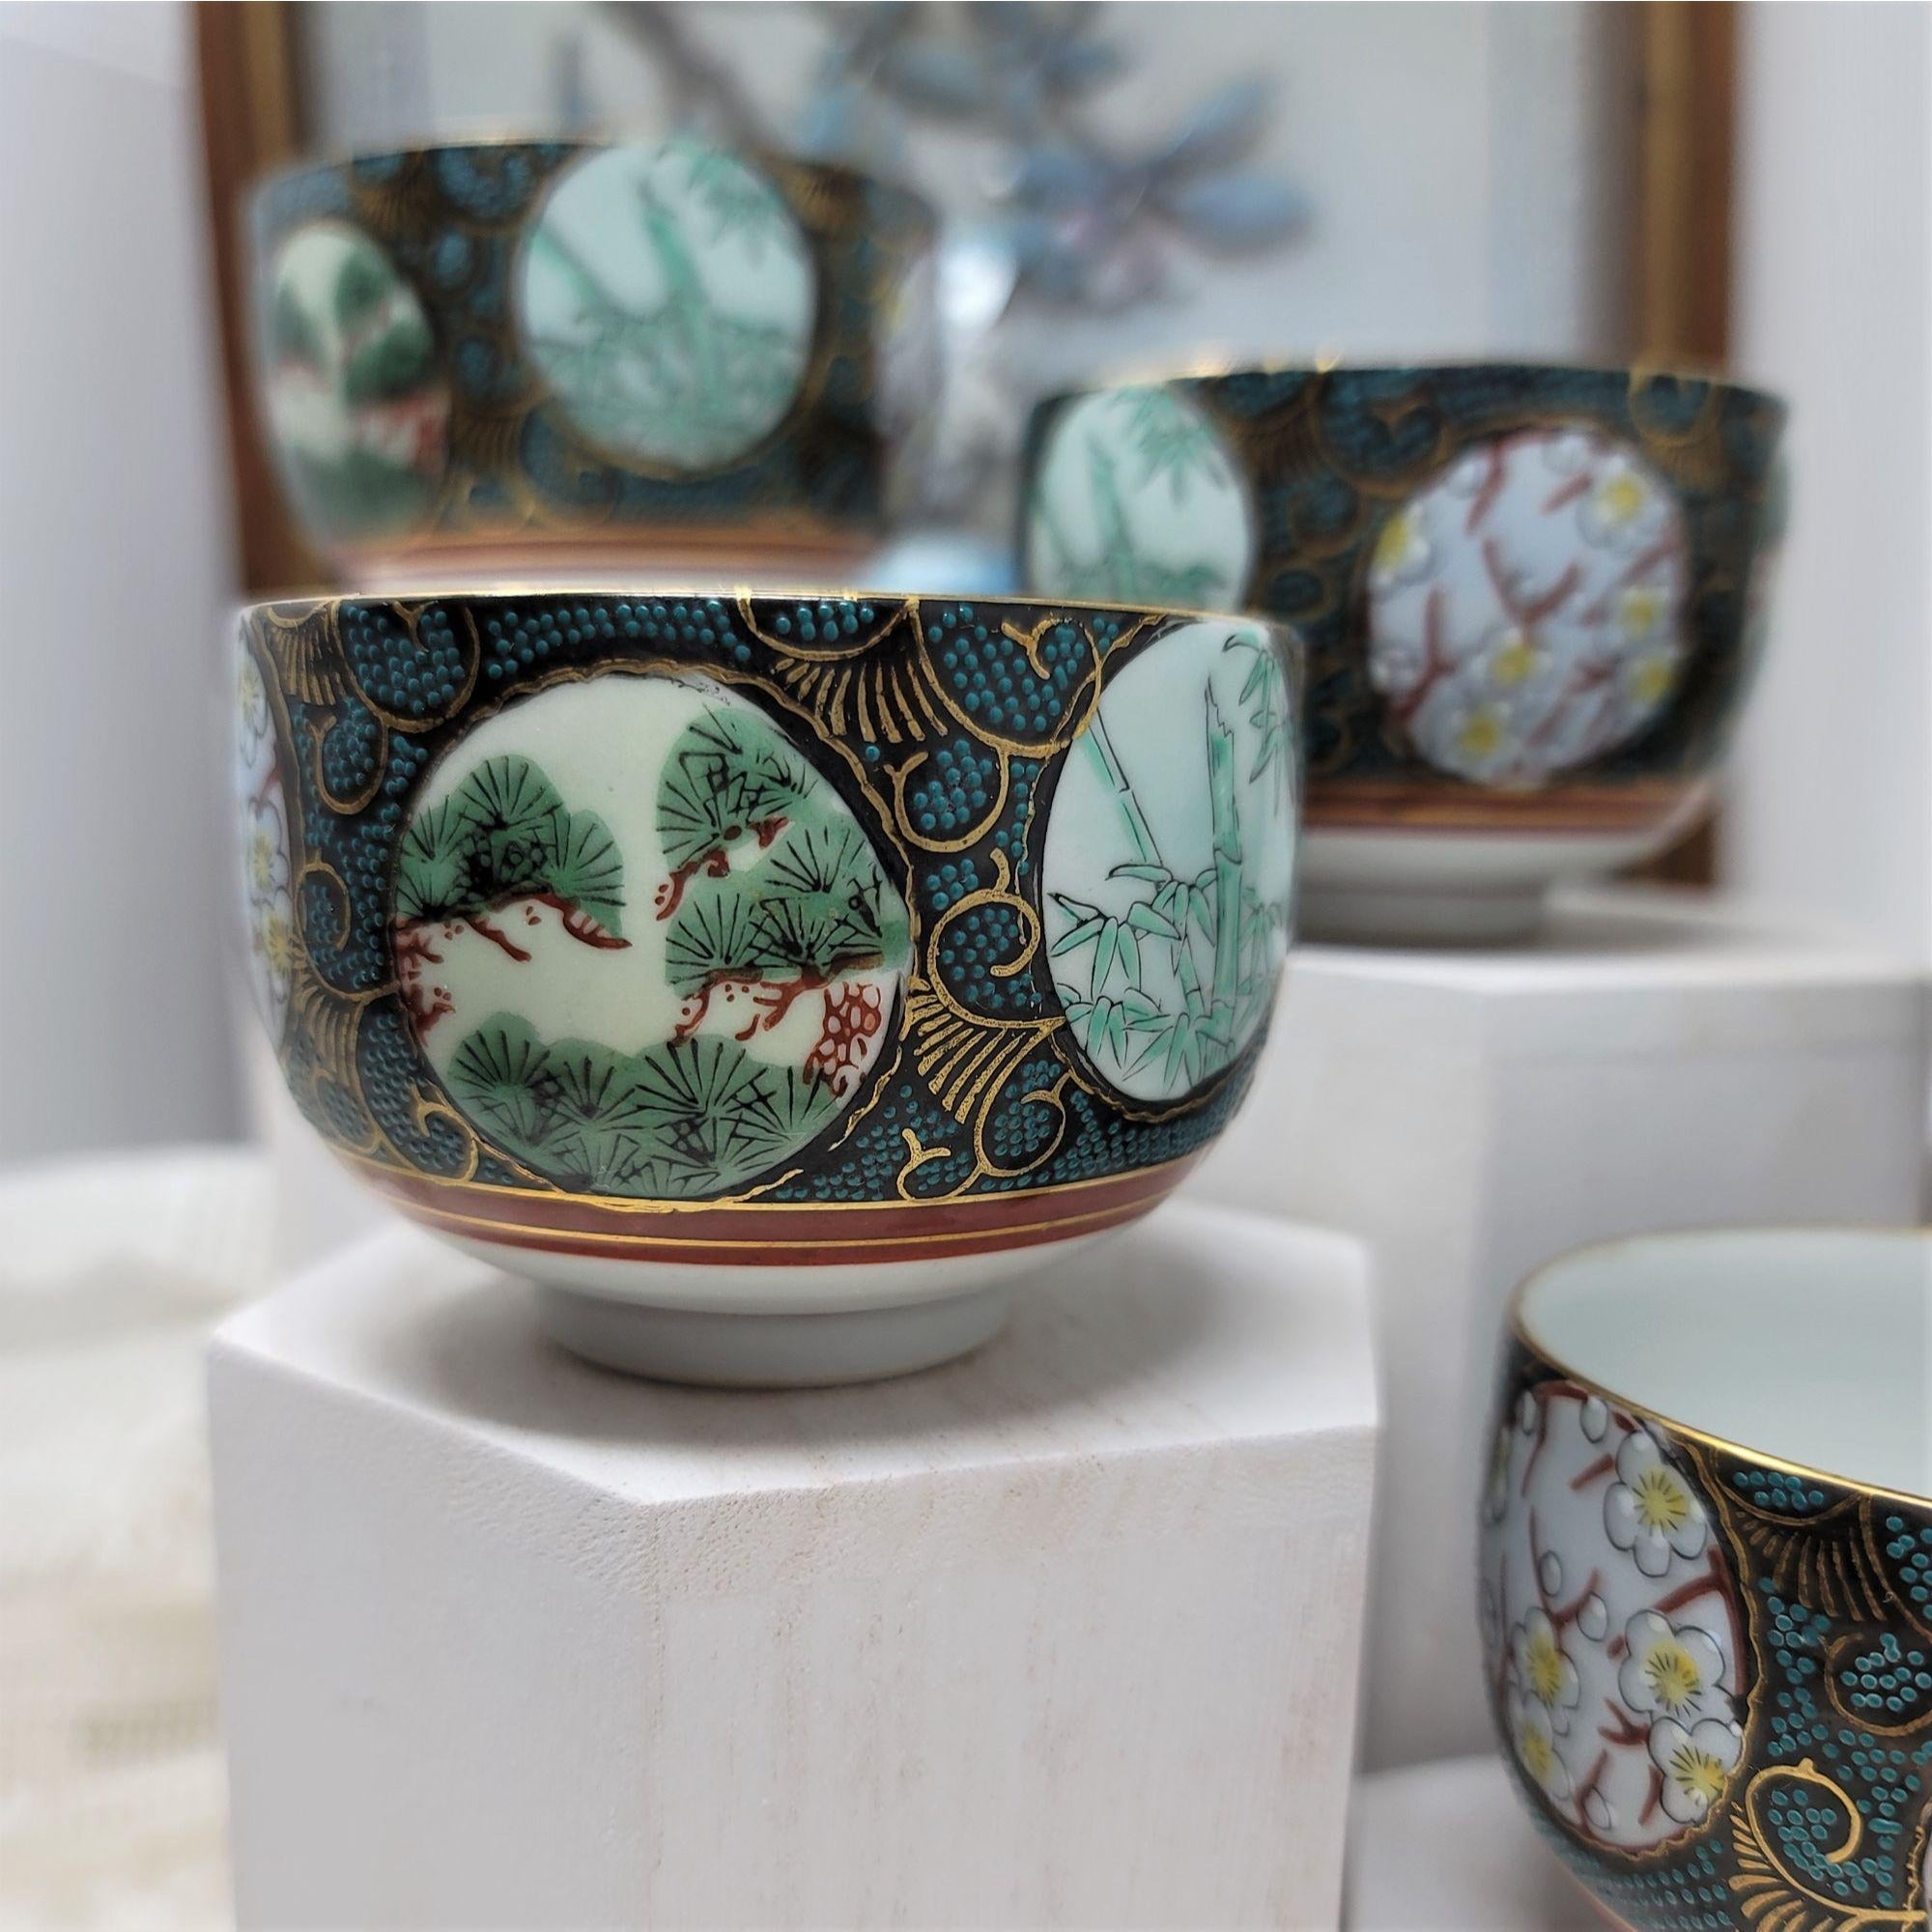 Vintage Made in Japan Tea Cups Set of 5 Raised Pattern